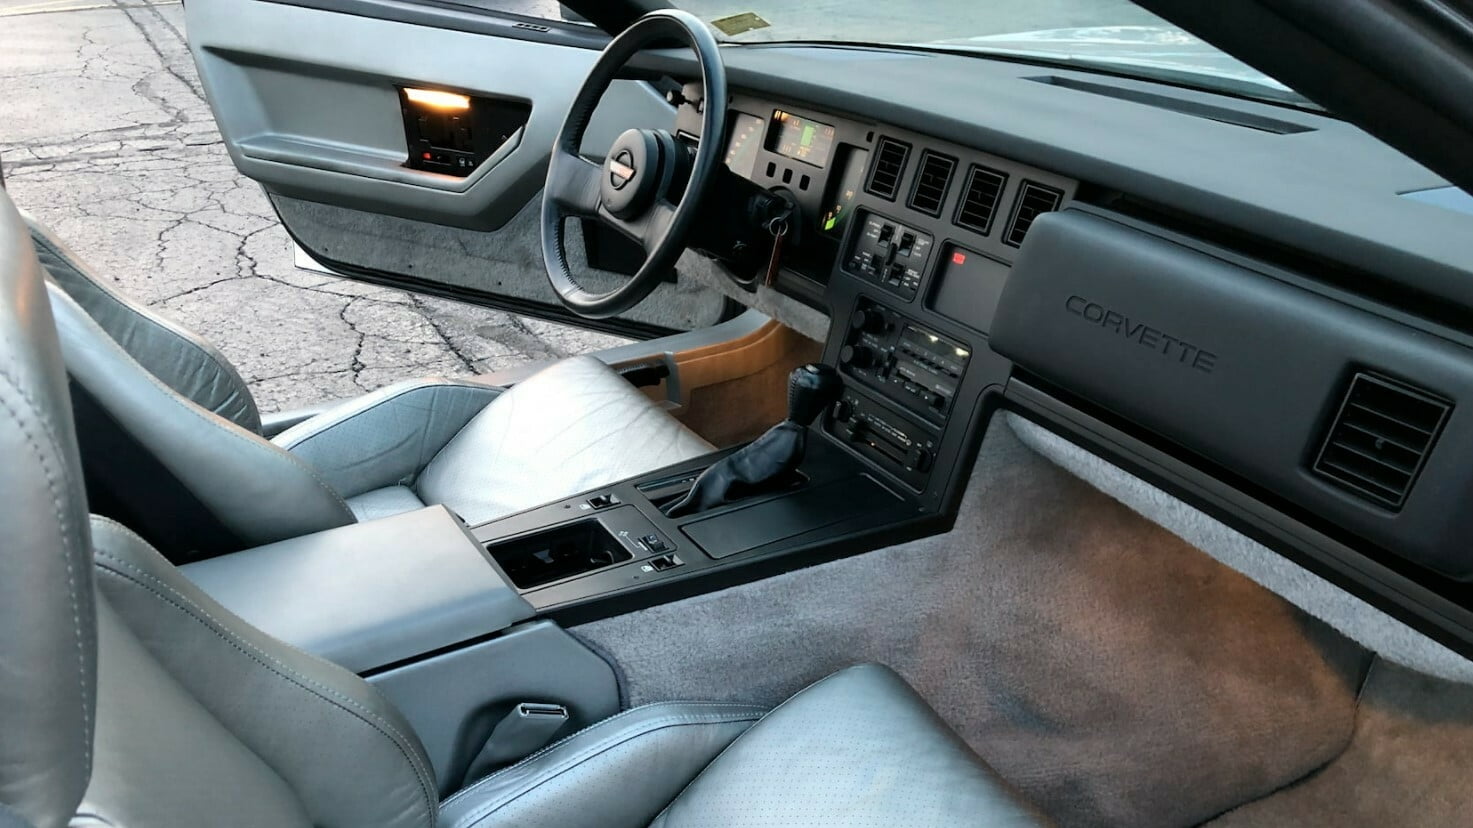 1984 Corvette Interior